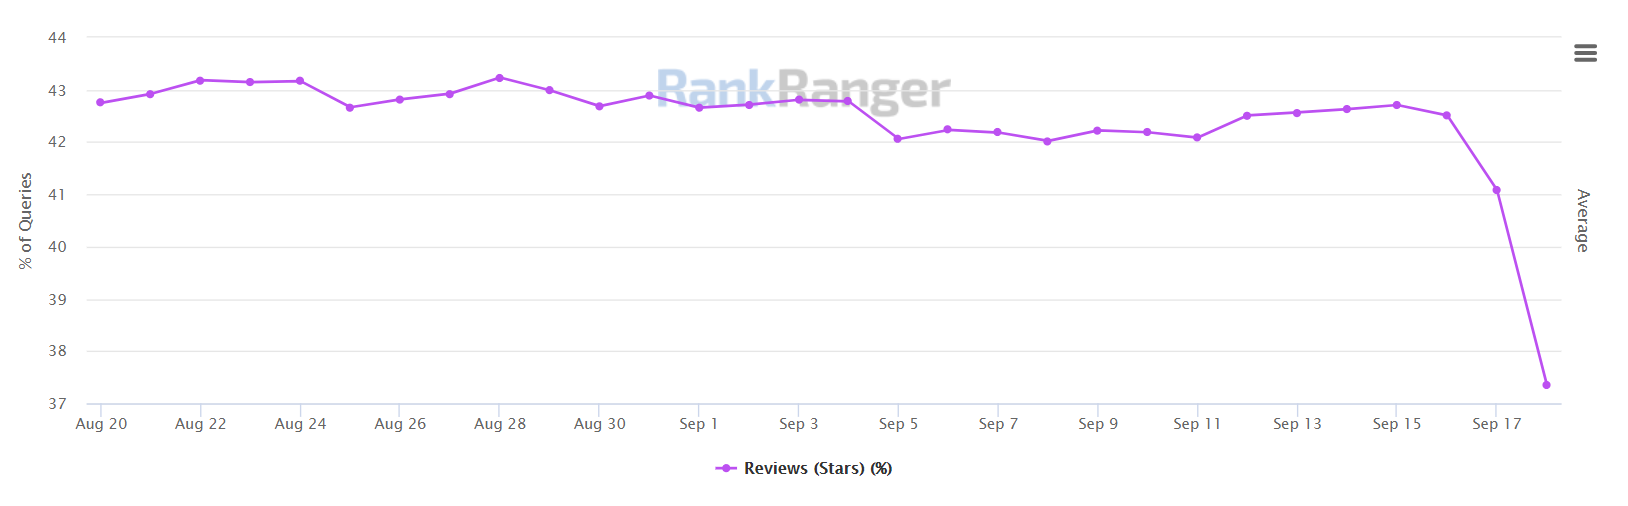 Rank Ranger: Anteil von Suchergebnissen mit Reviews